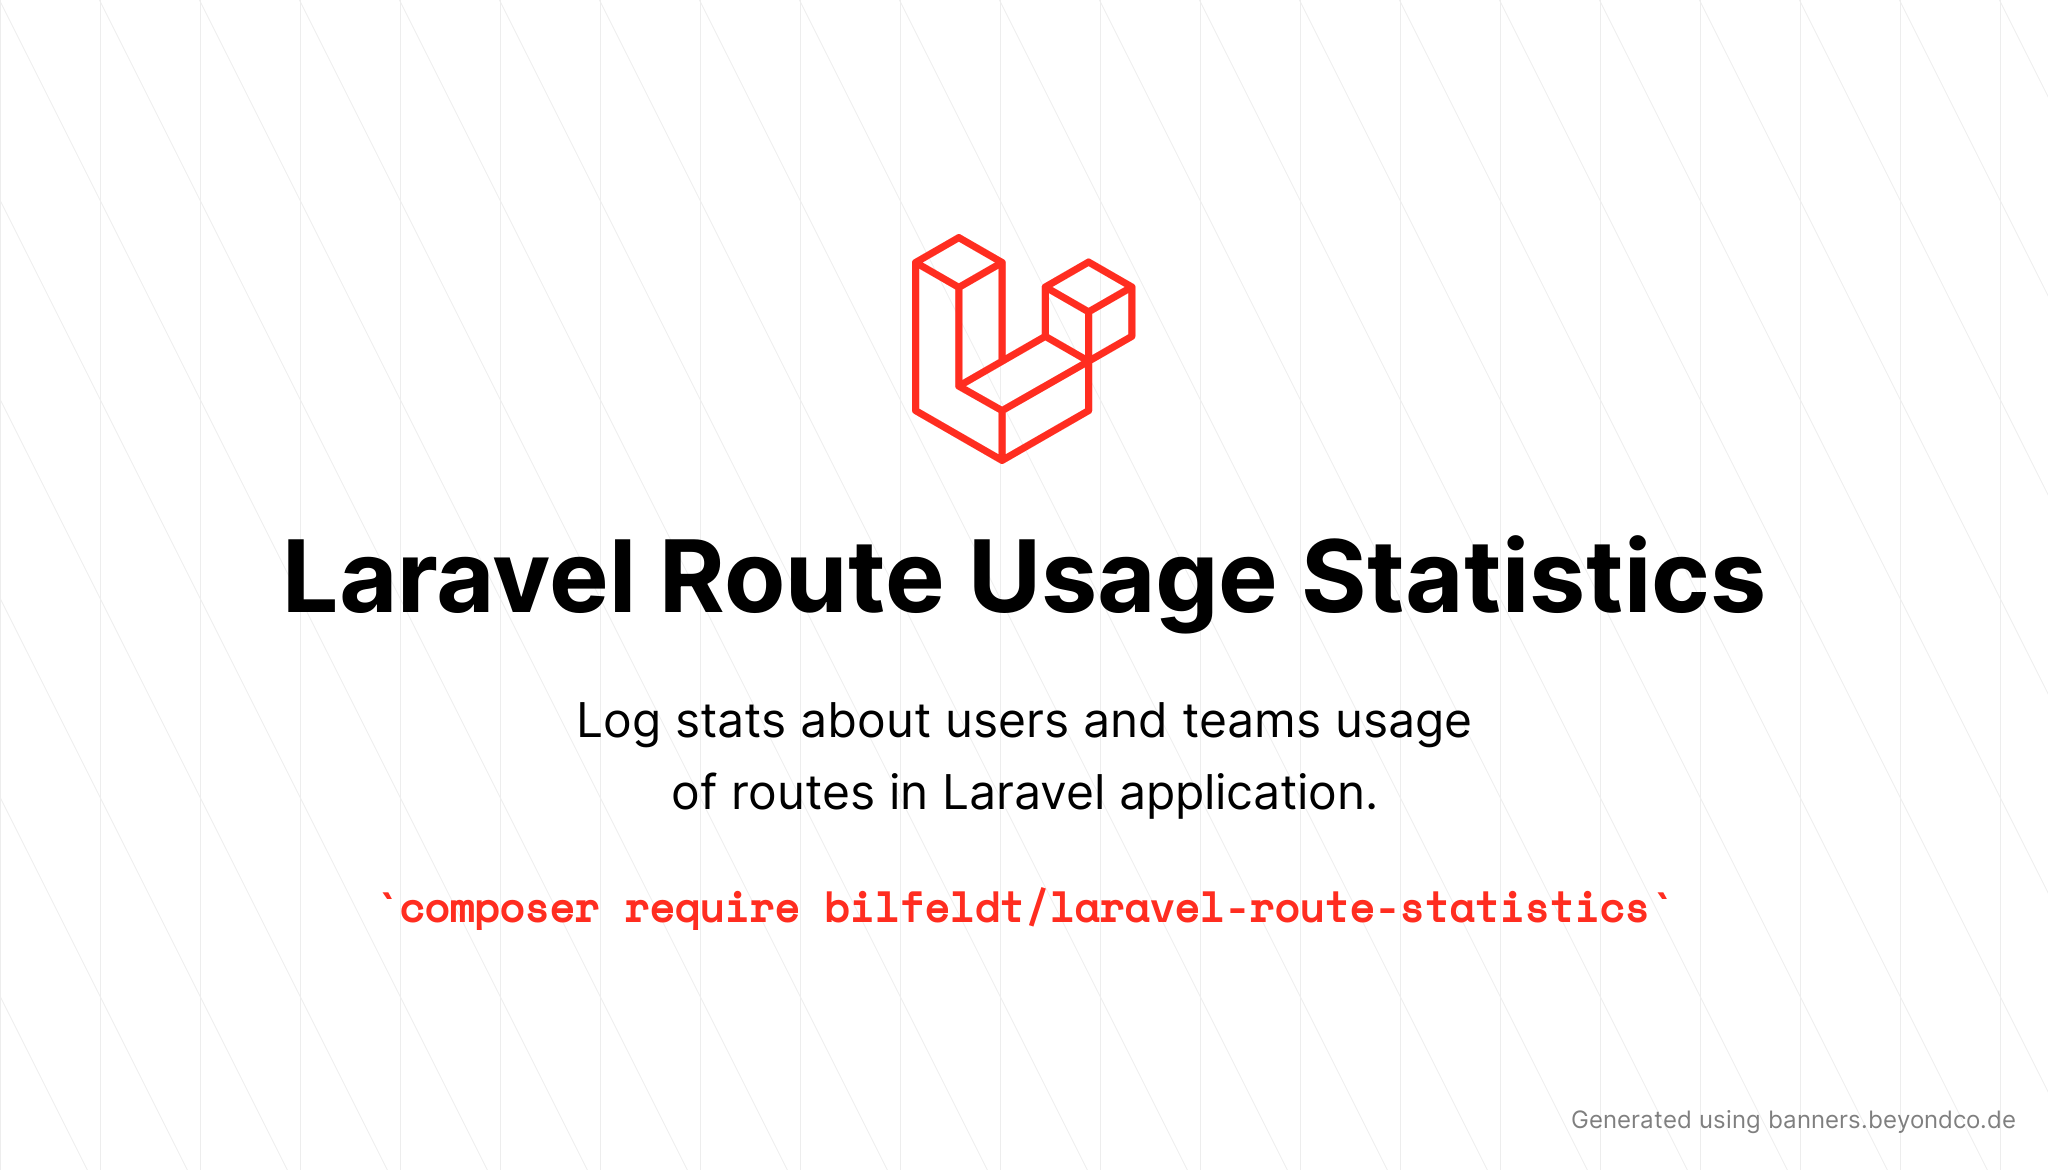 bilfeldt/laravel-route-statistics